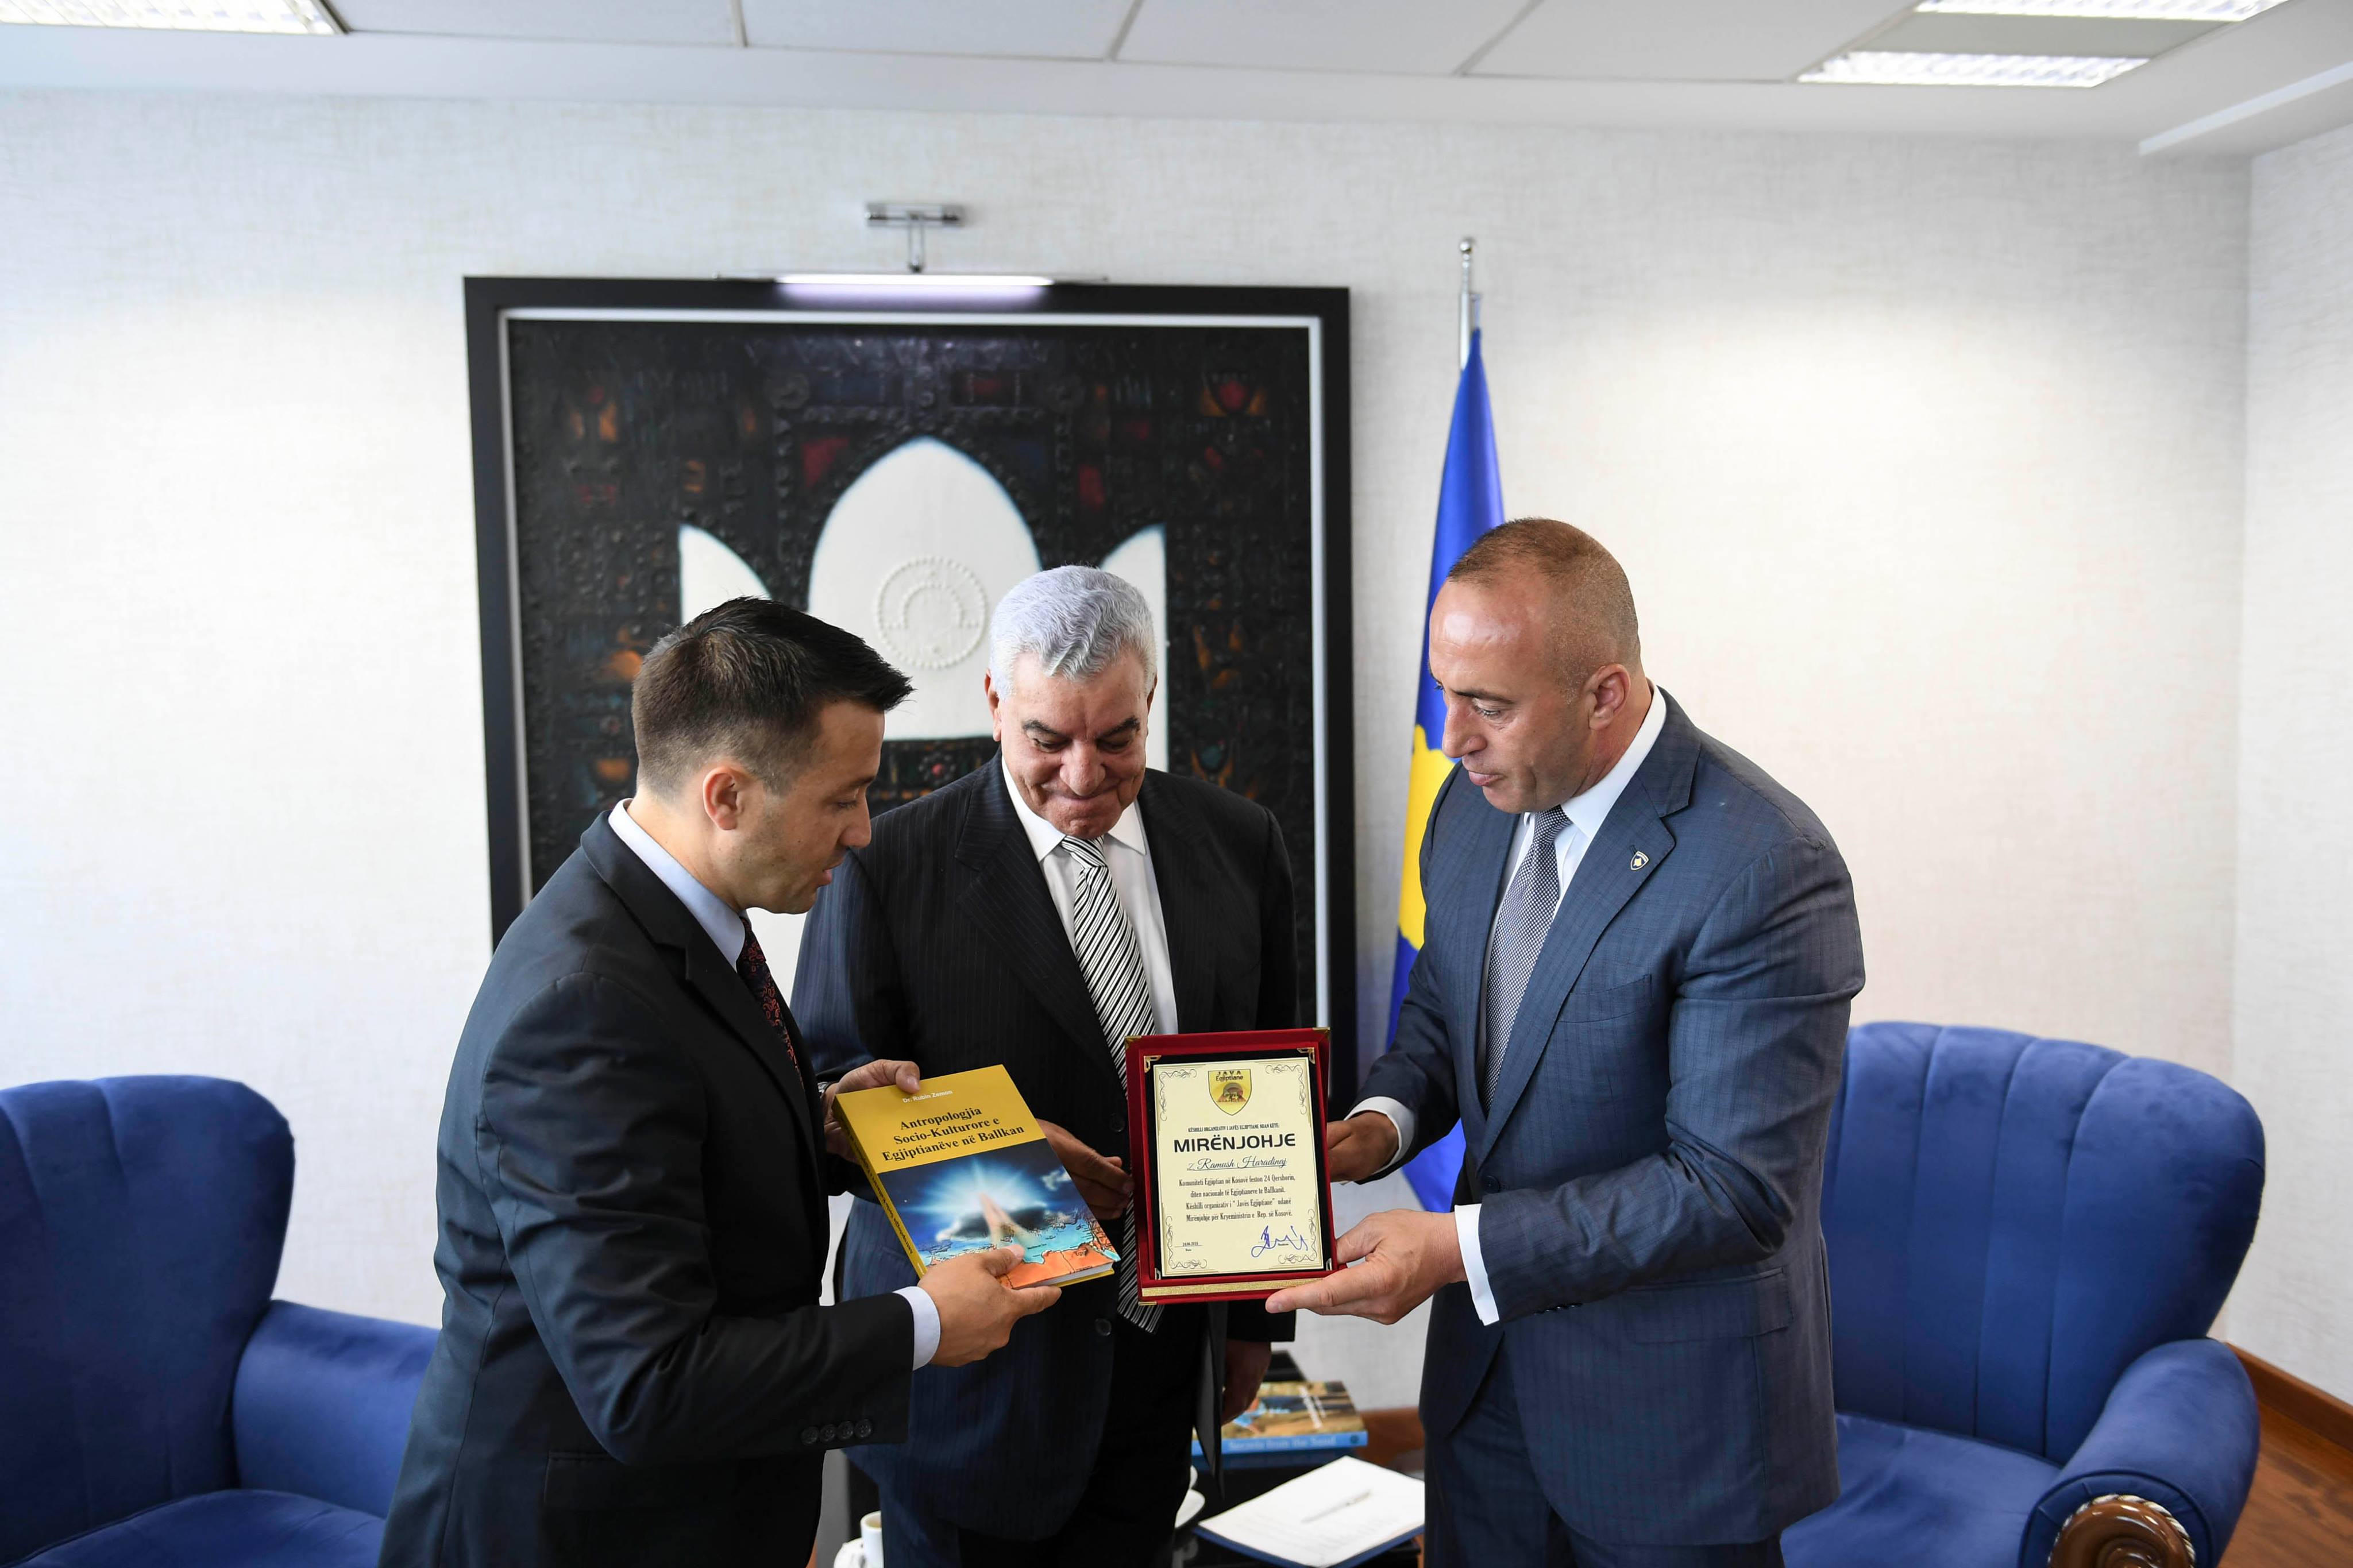 رئيس وزراء كوسوفو يهدى زاهى حواس شعار الدولة  (7)